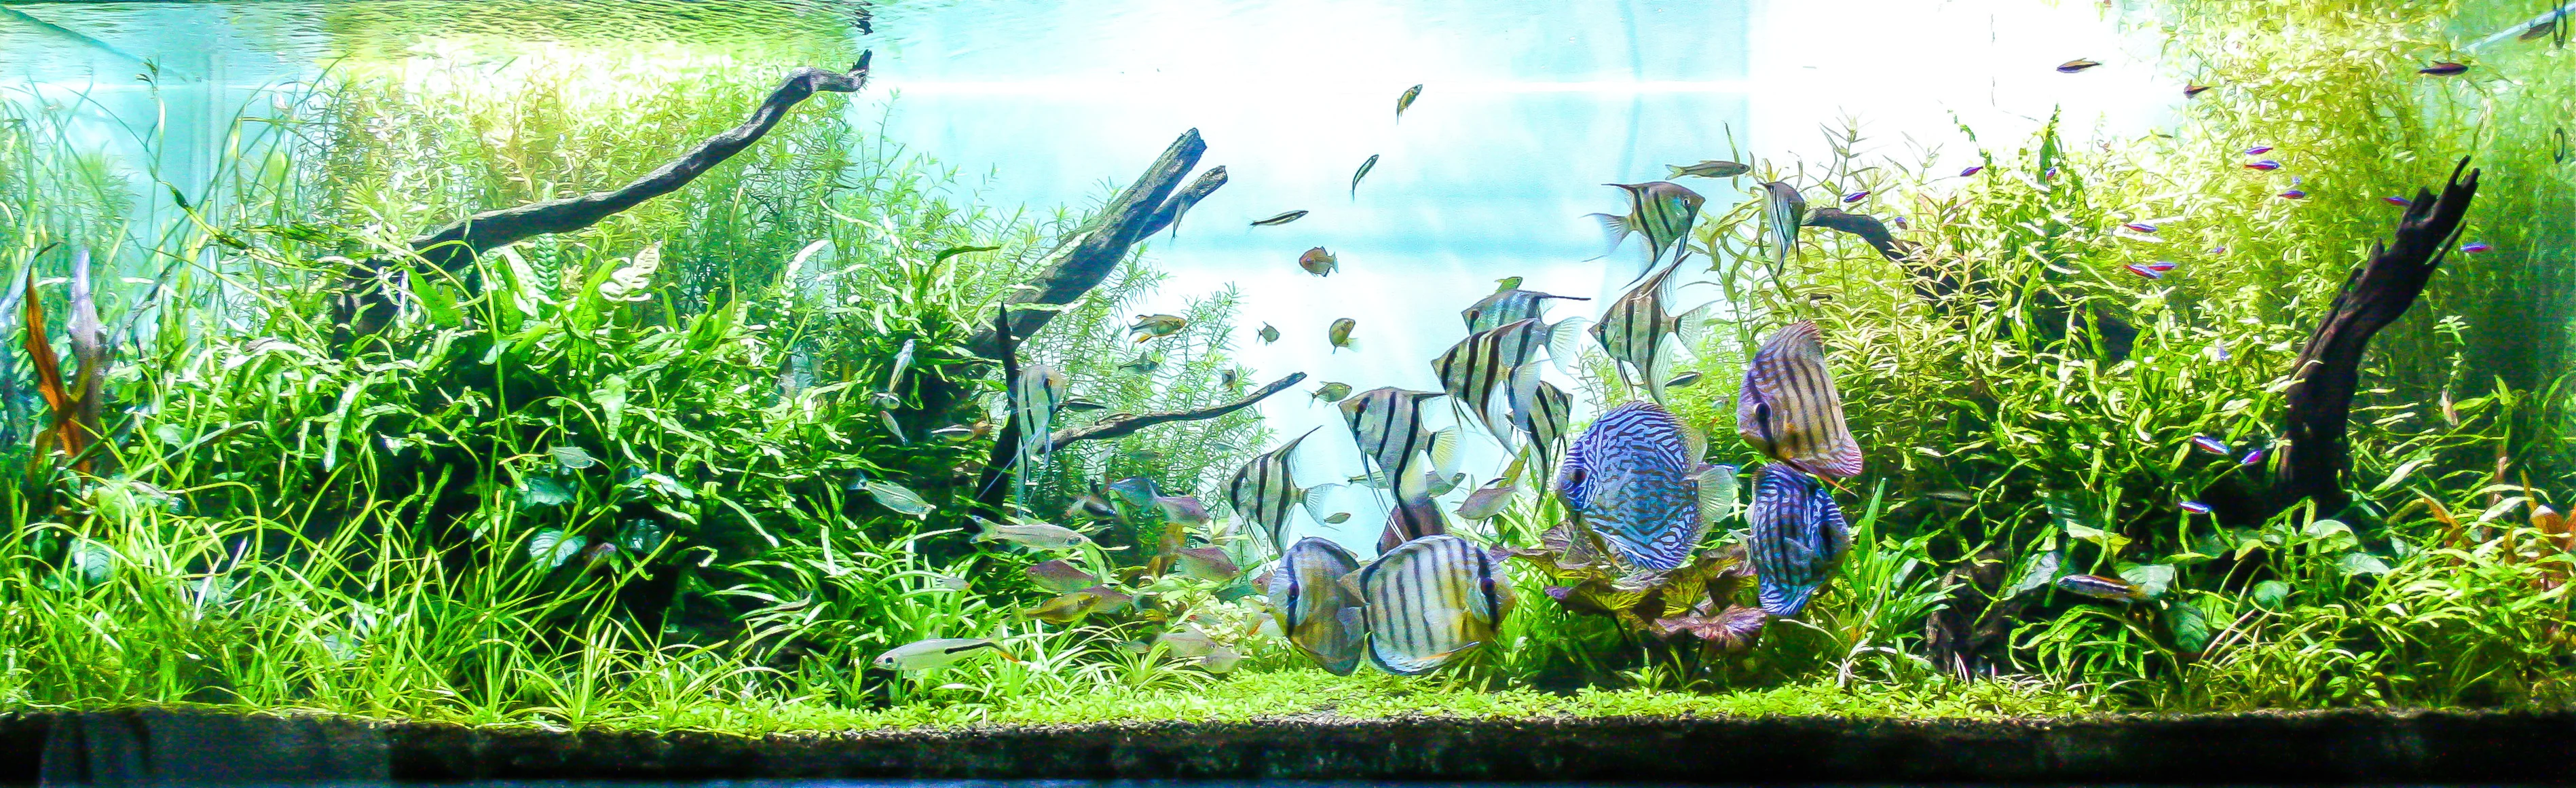 Adesivo de fundo de aquário - Textura de prancha de madeira HD 3D decoração  de pôster - para aquário de peixes de 5 a 60 galões habitat de répteis  (35,4 x 23,6